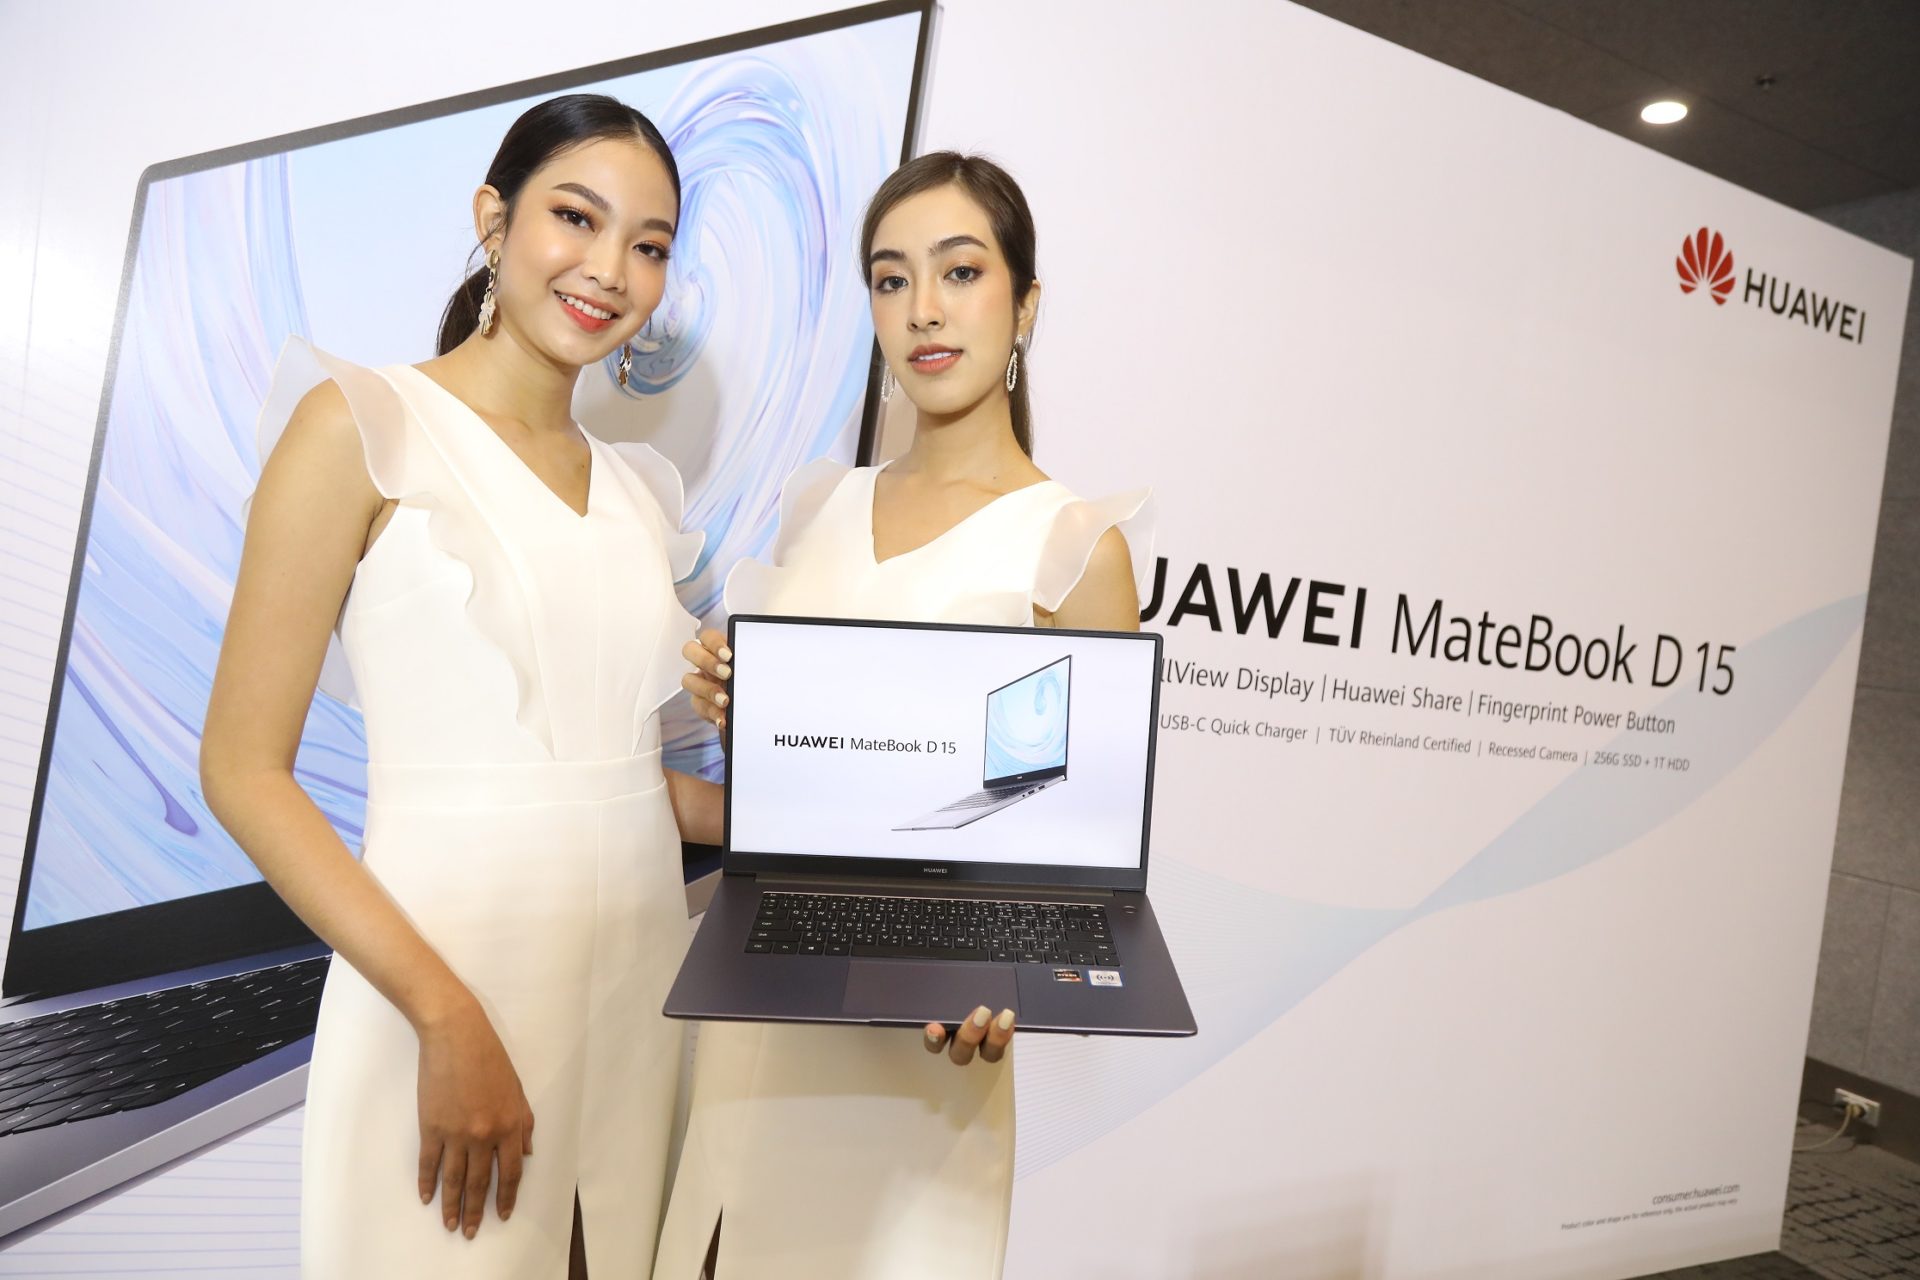 คุ้มเกินไปแล้ว! Huawei MateBook D15 เปิดราคา 17,990 พรีออเดอร์ลด 3,000 มีของแถมเกือบ 7,000 พร้อมกองทัพสินค้าอีกหลายราคา